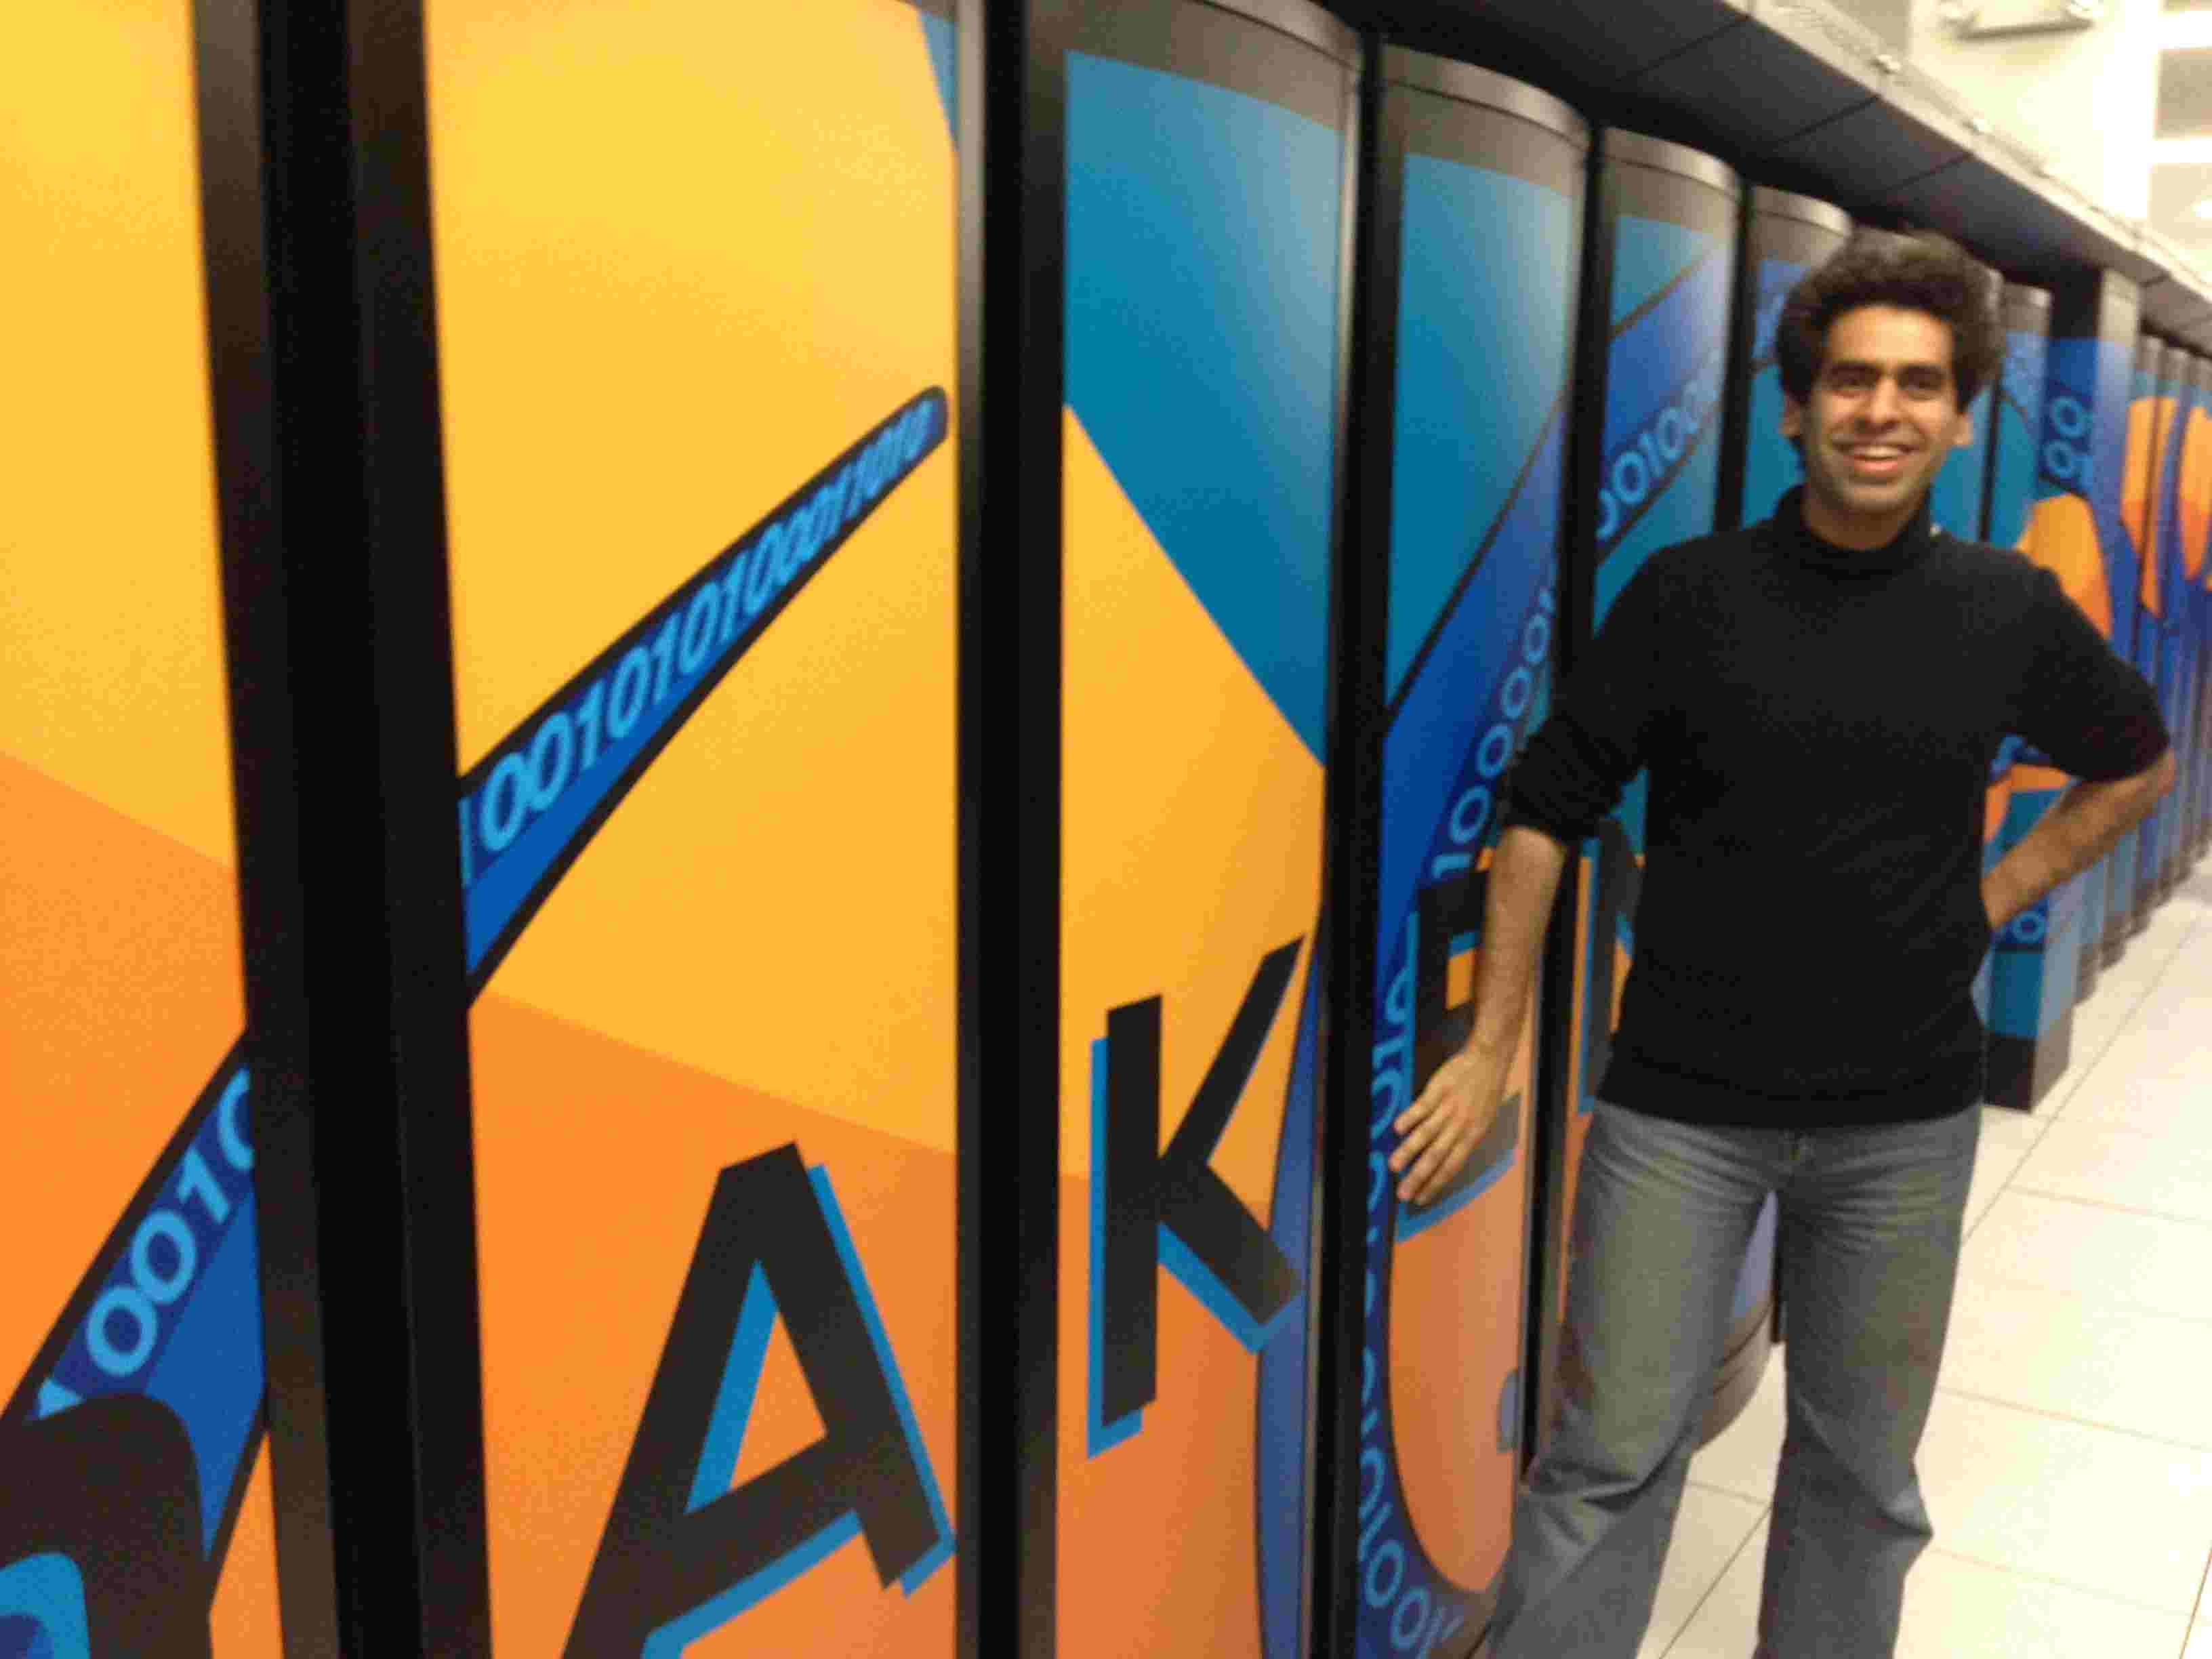 KRAKEN, ‘world’s 3rd fastest’ supercomputer in 2008.